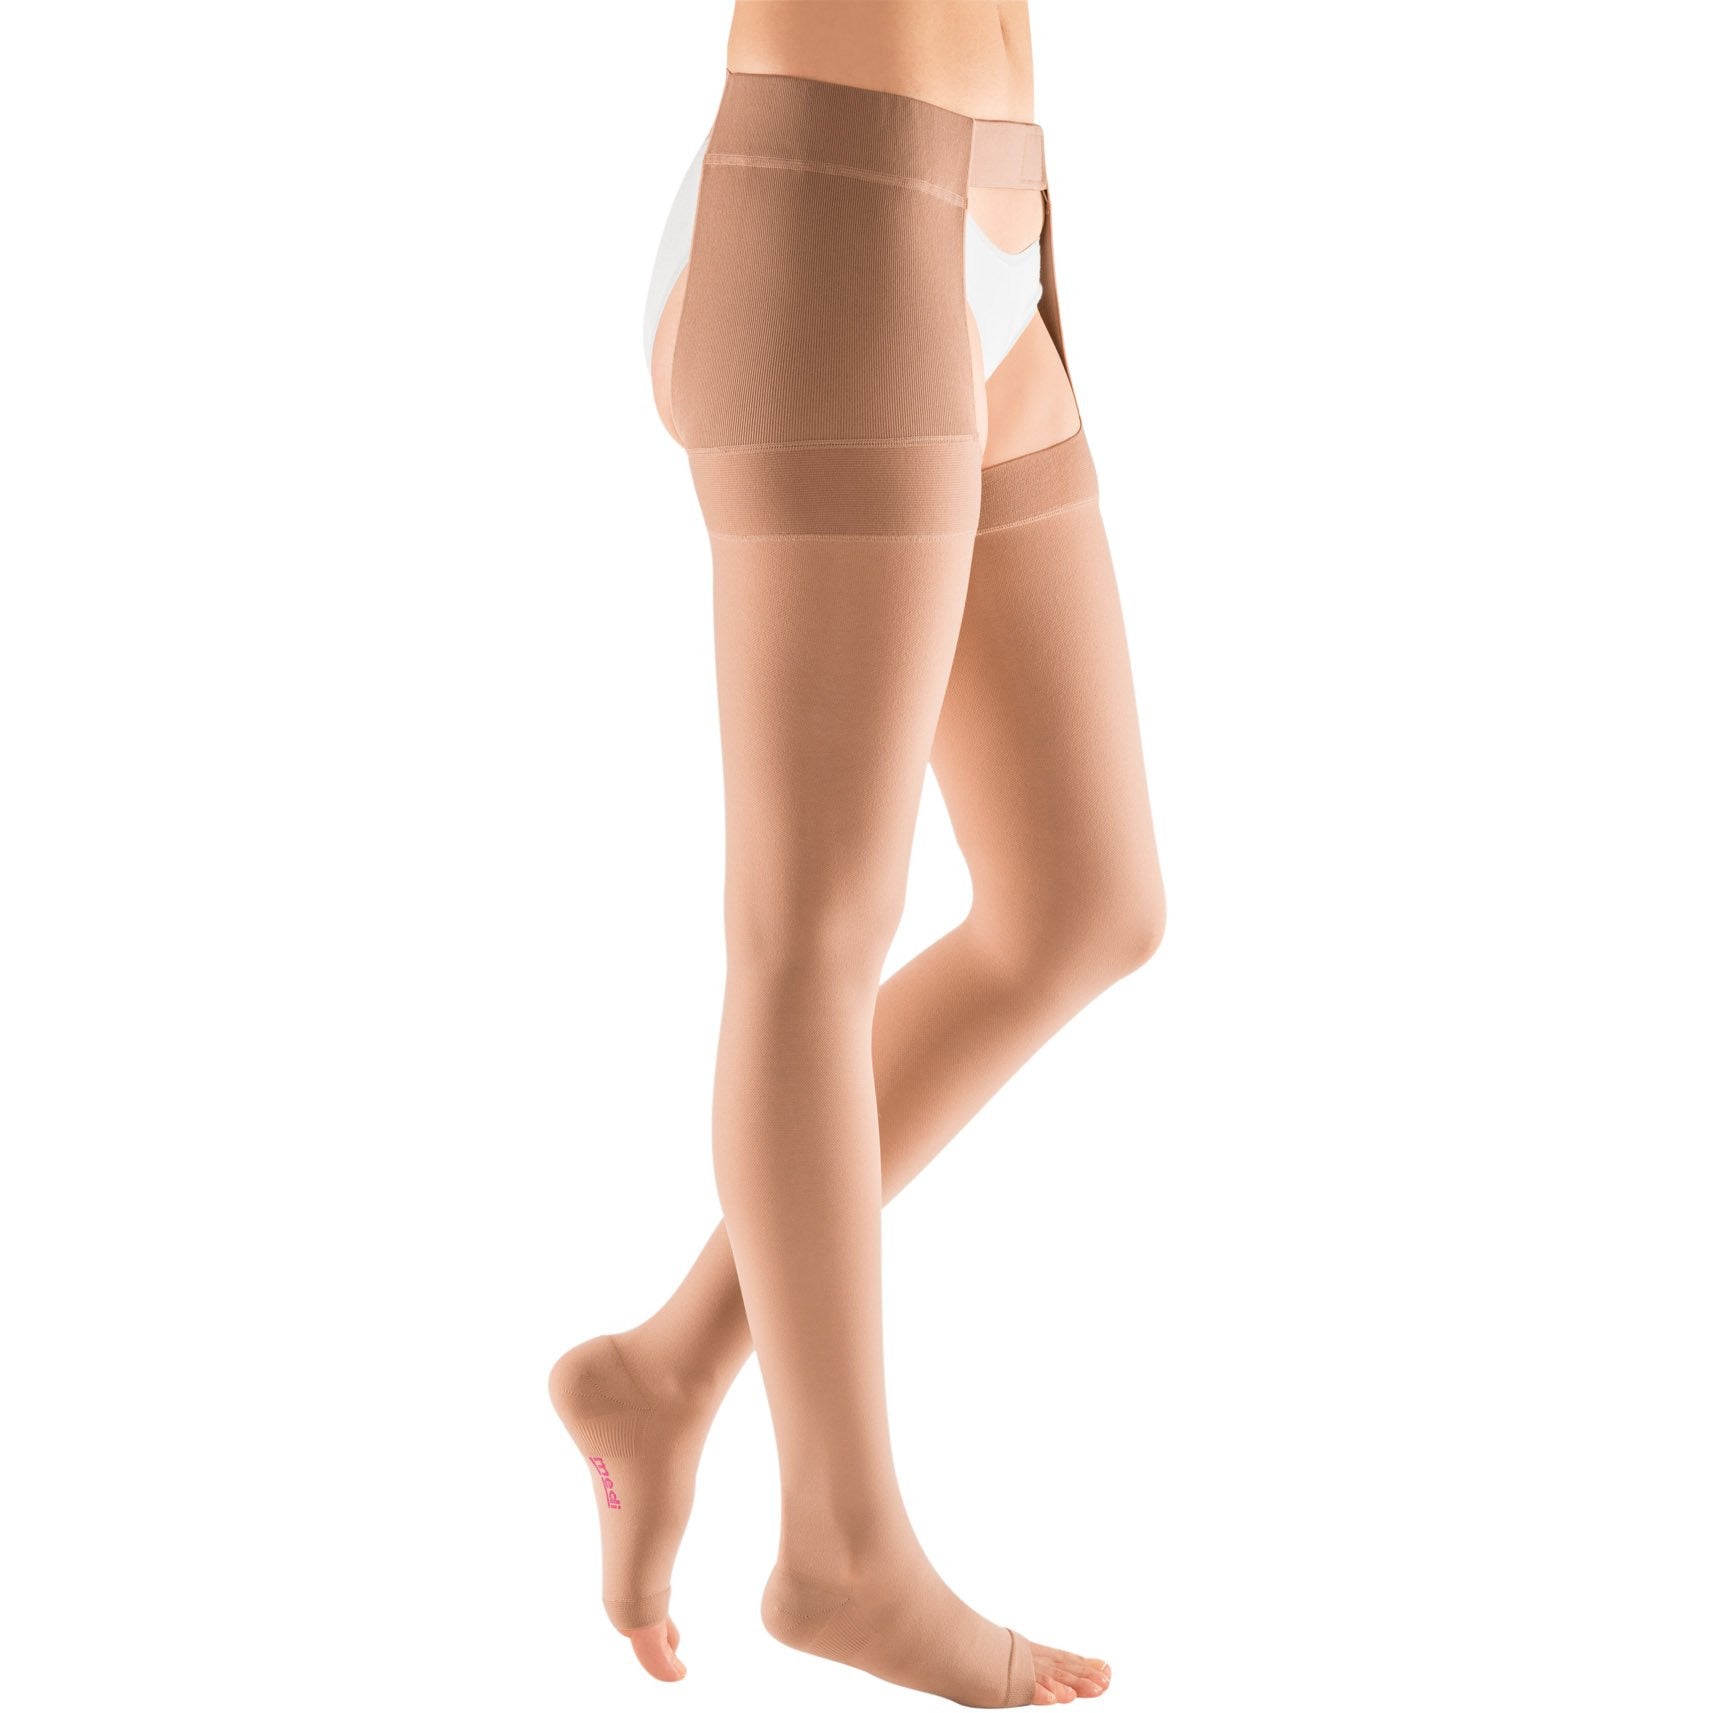 Mediven Plus Panty – LegSmart Compression Socks